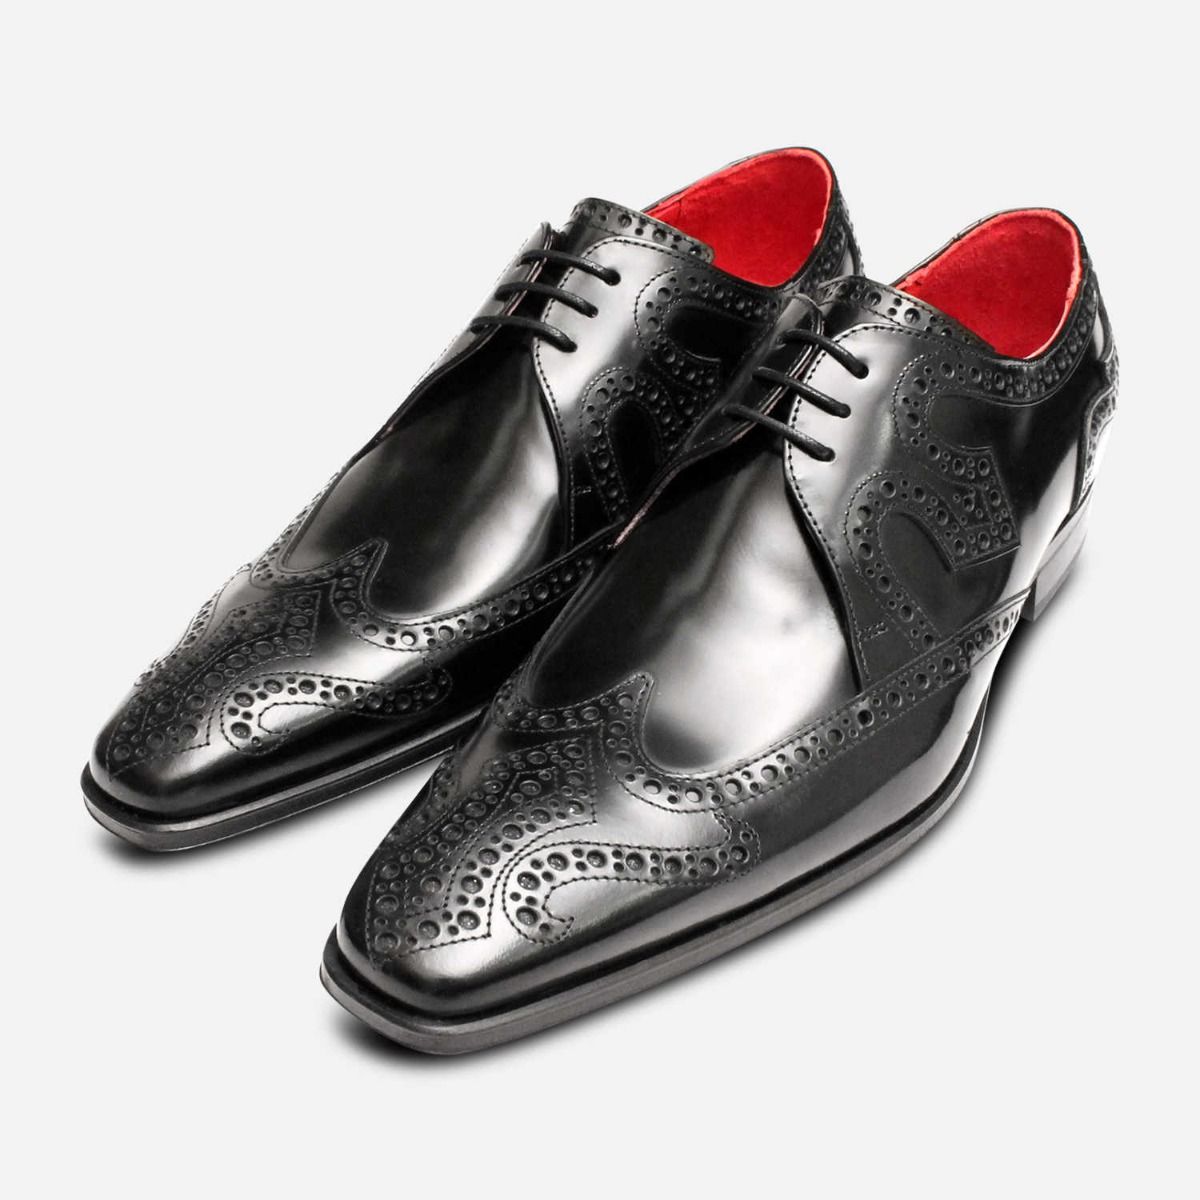 polished black dress shoes